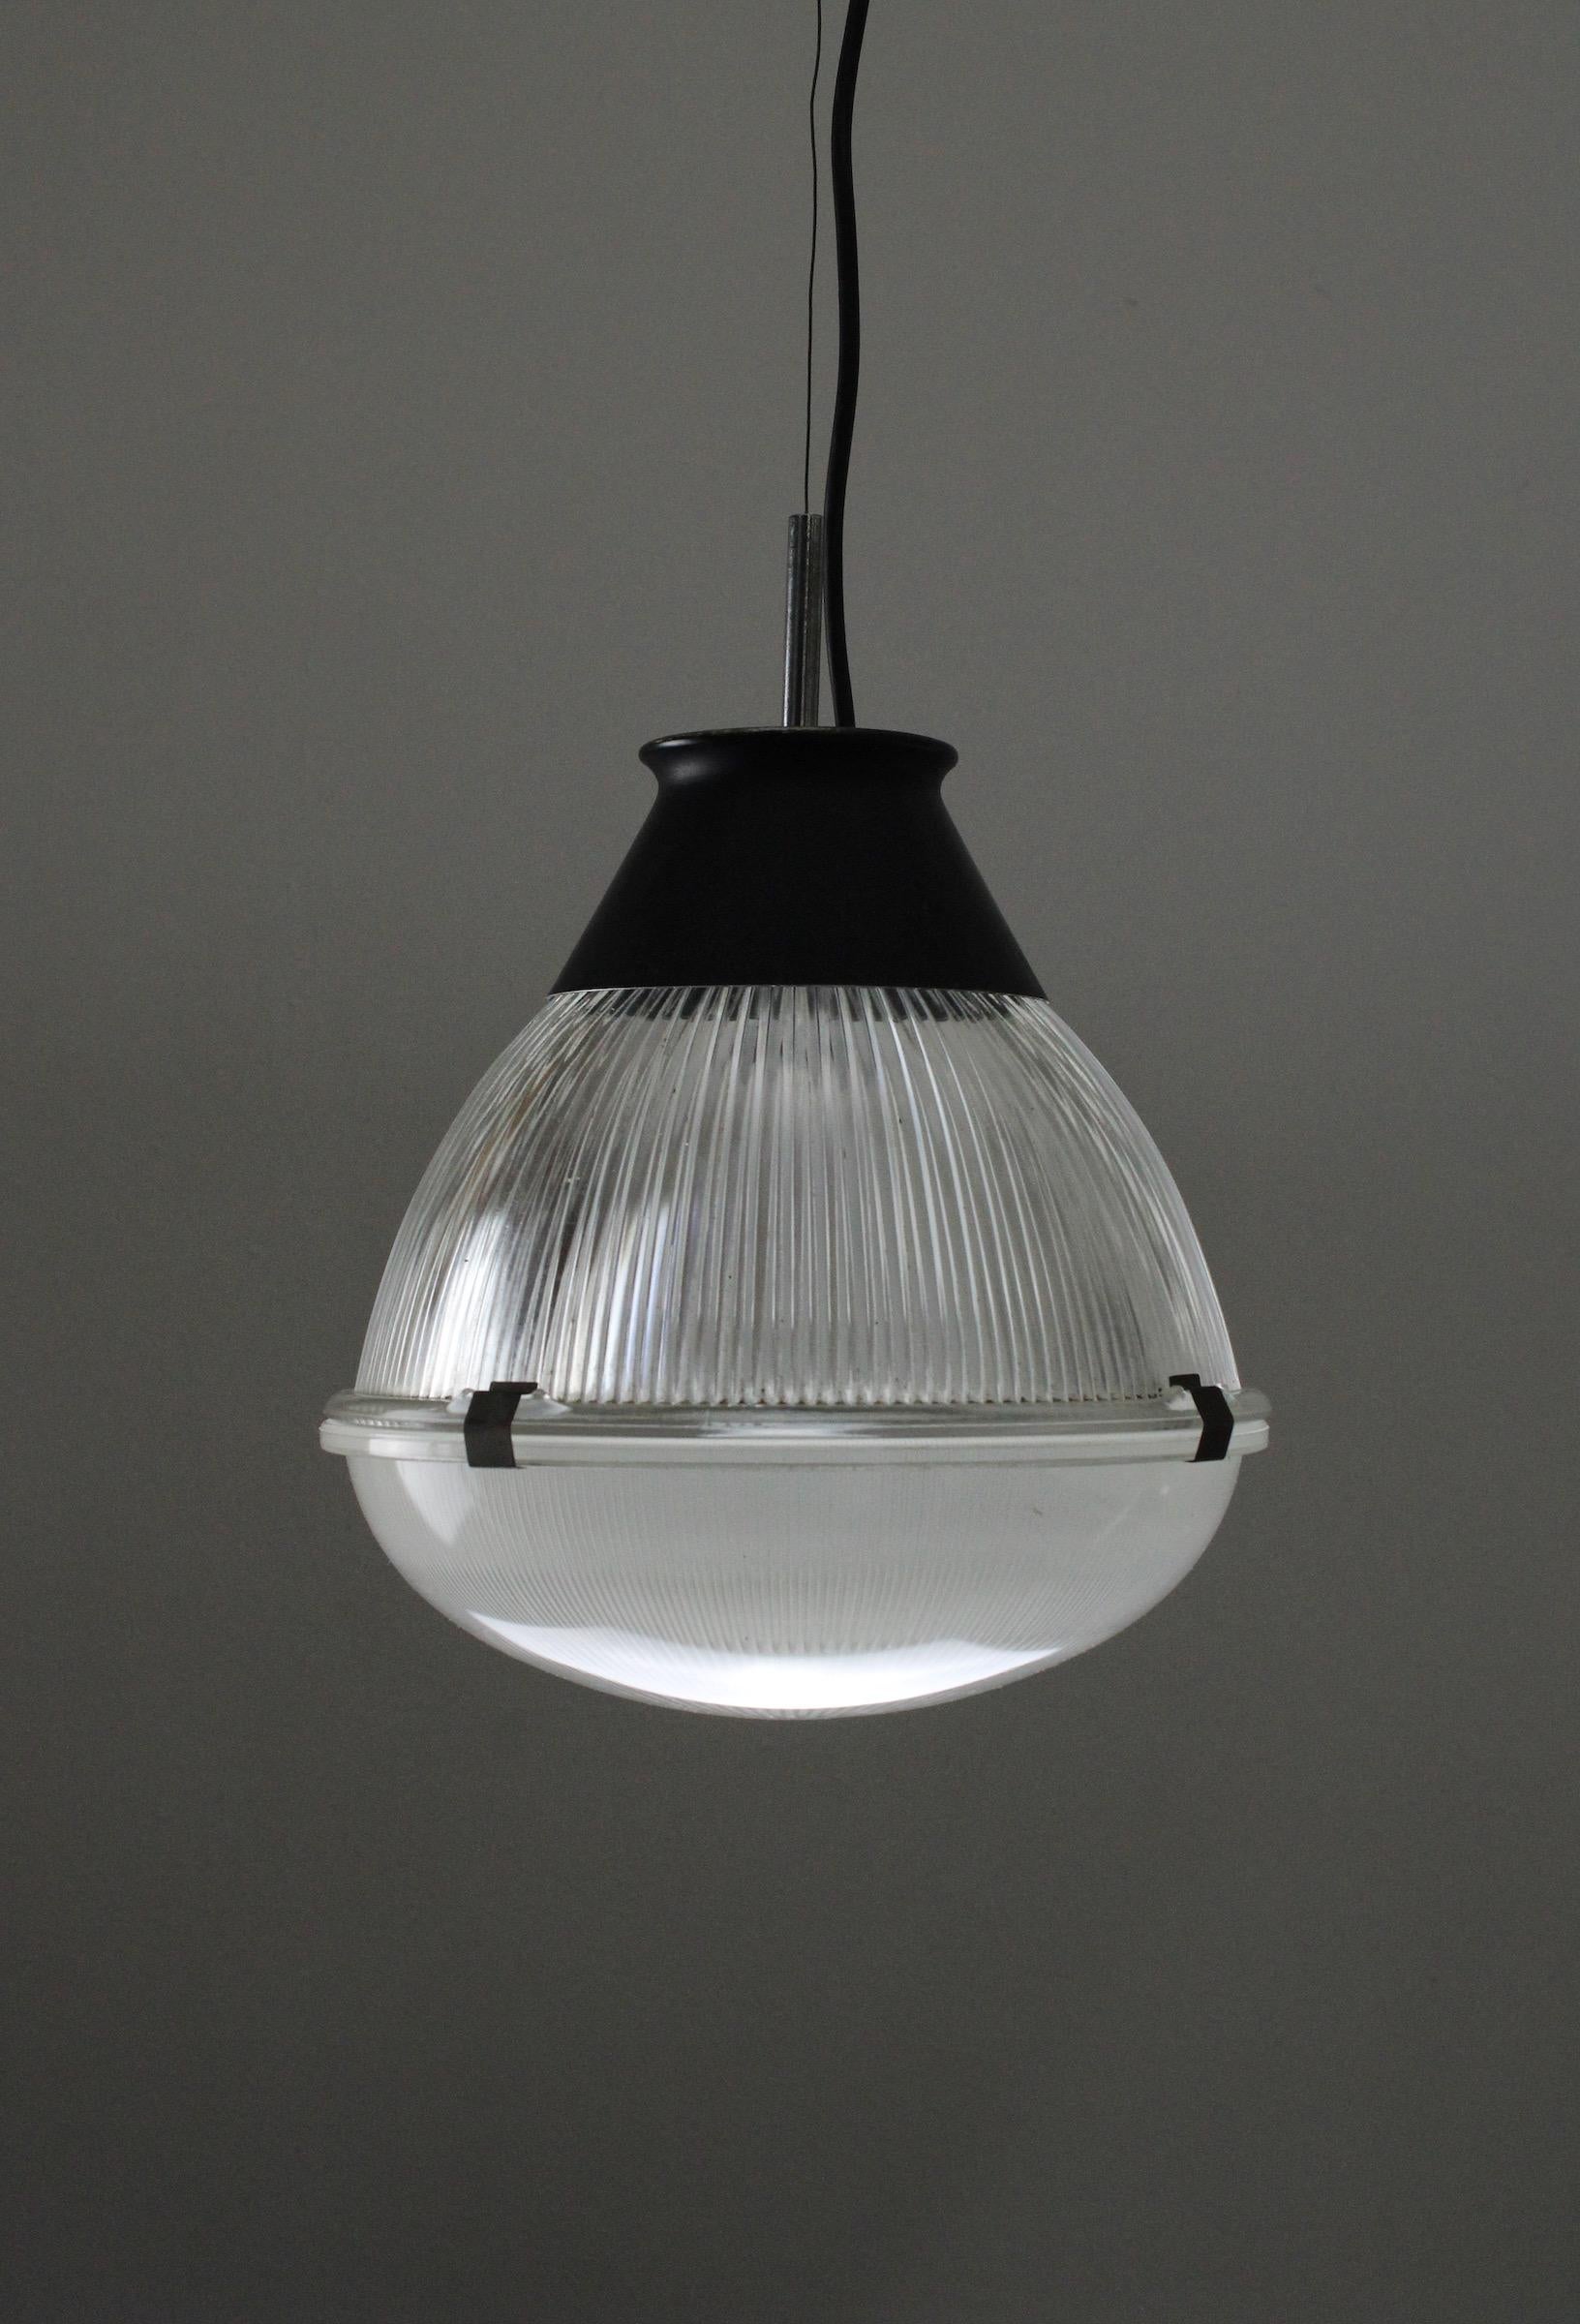 Hängeleuchte Modell 4409, entworfen von Tito Agnoli für Oluce, um 1958. Eine klassische Leuchte im italienischen Stil, hergestellt aus geriffeltem Glas und lackiertem Stahl. Sehr erkennbares Design im Vergleich zu anderen Lampen aus dieser Zeit, zum